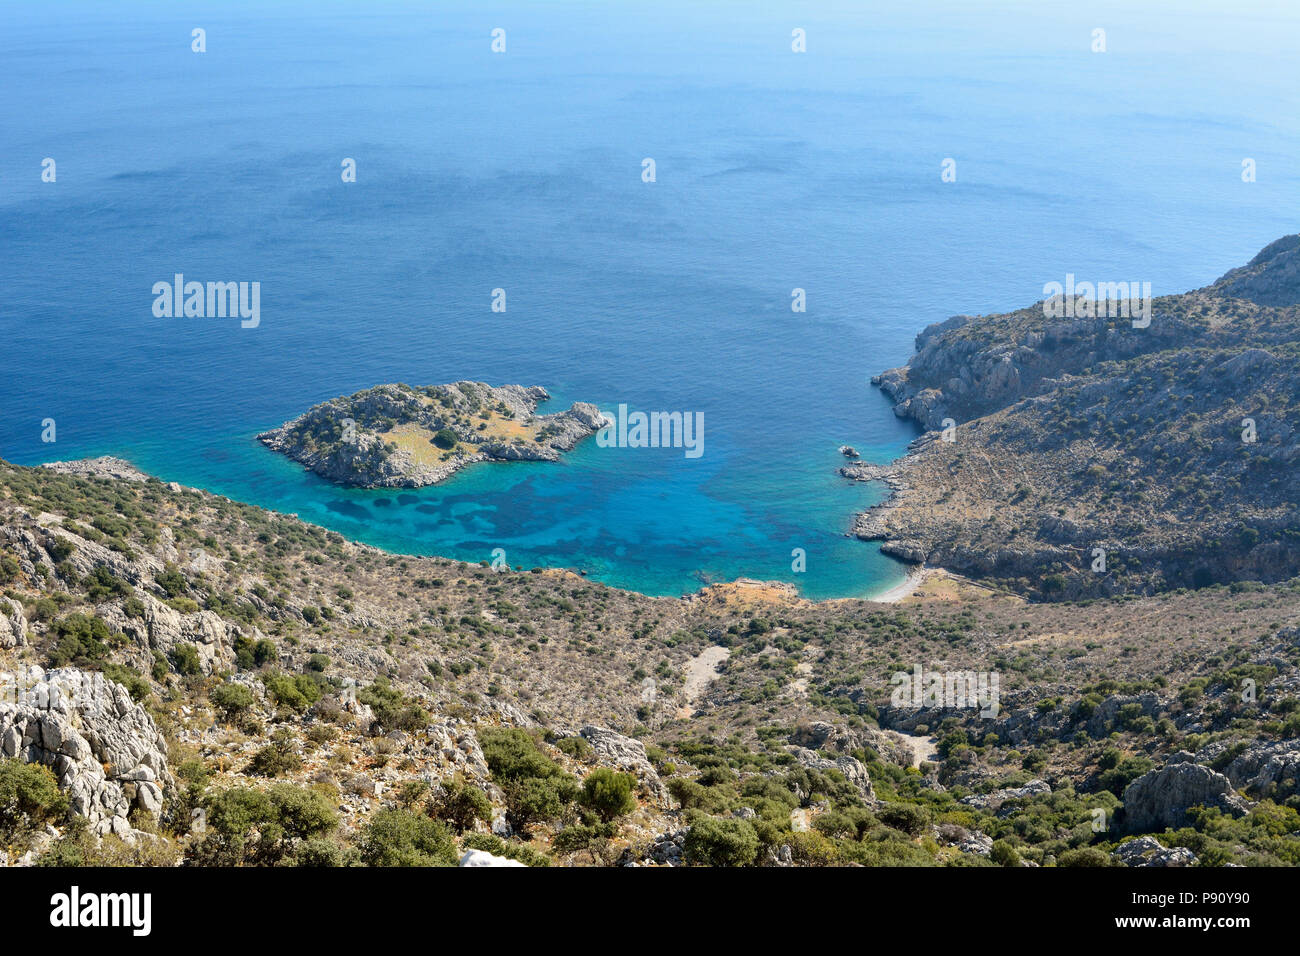 Mittelmeerküste zwischen Sogut und Taslica auf der Halbinsel Bozburun bei Marmaris Resort Stadt in der Türkei, mit unbewohnten Arap Adasi Insel. Stockfoto